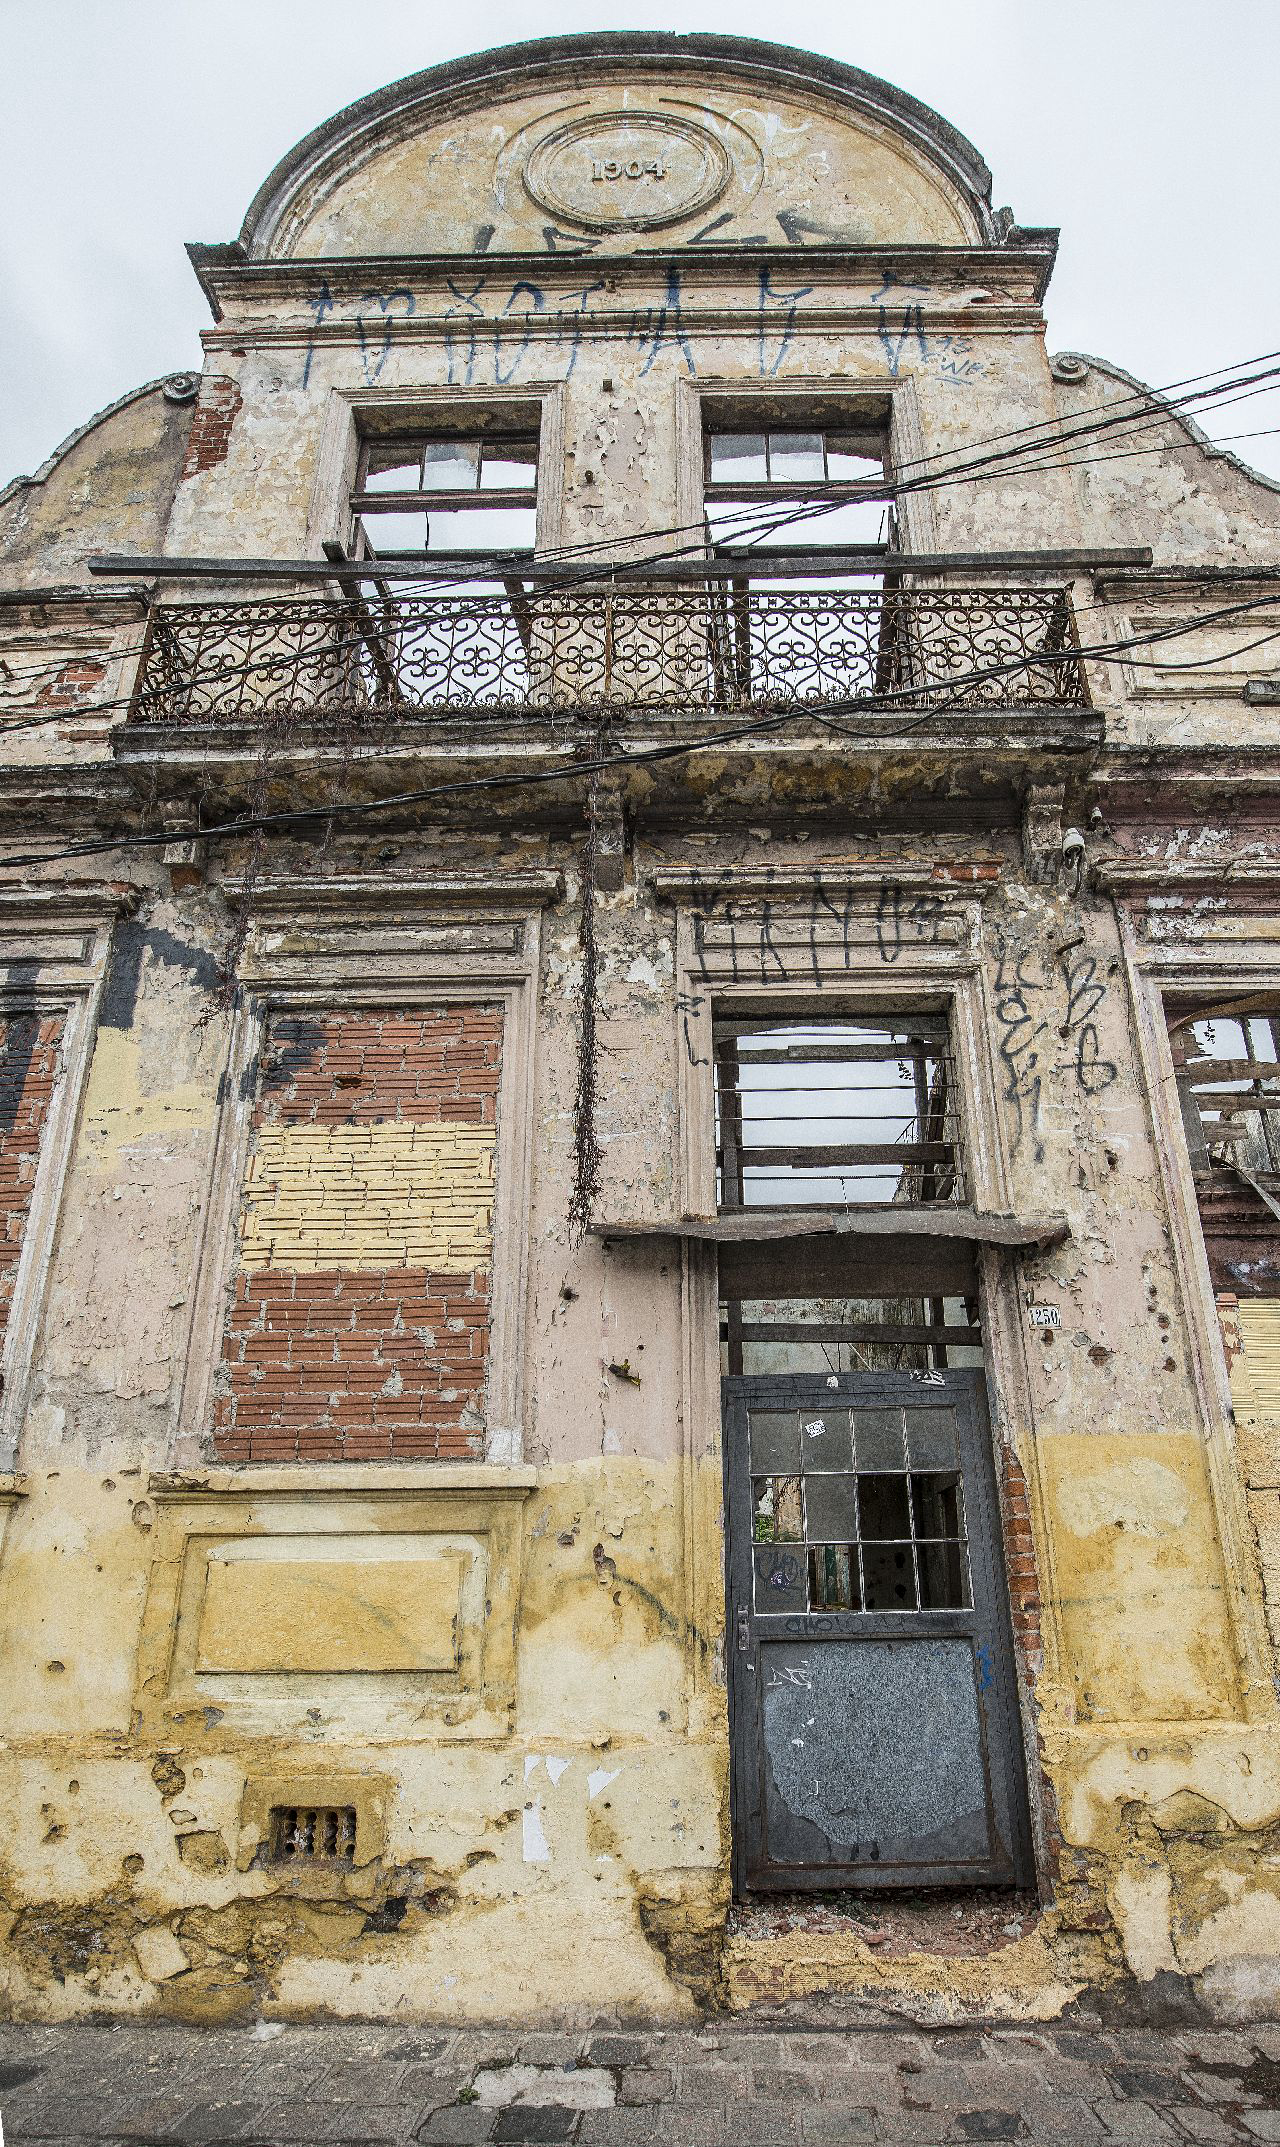 Imóvel em ruínas no Rebouças: necessidade de rever a forma de se revitalizar espaços preservados. Foto: Leticia Akemi / Gazeta do Povo